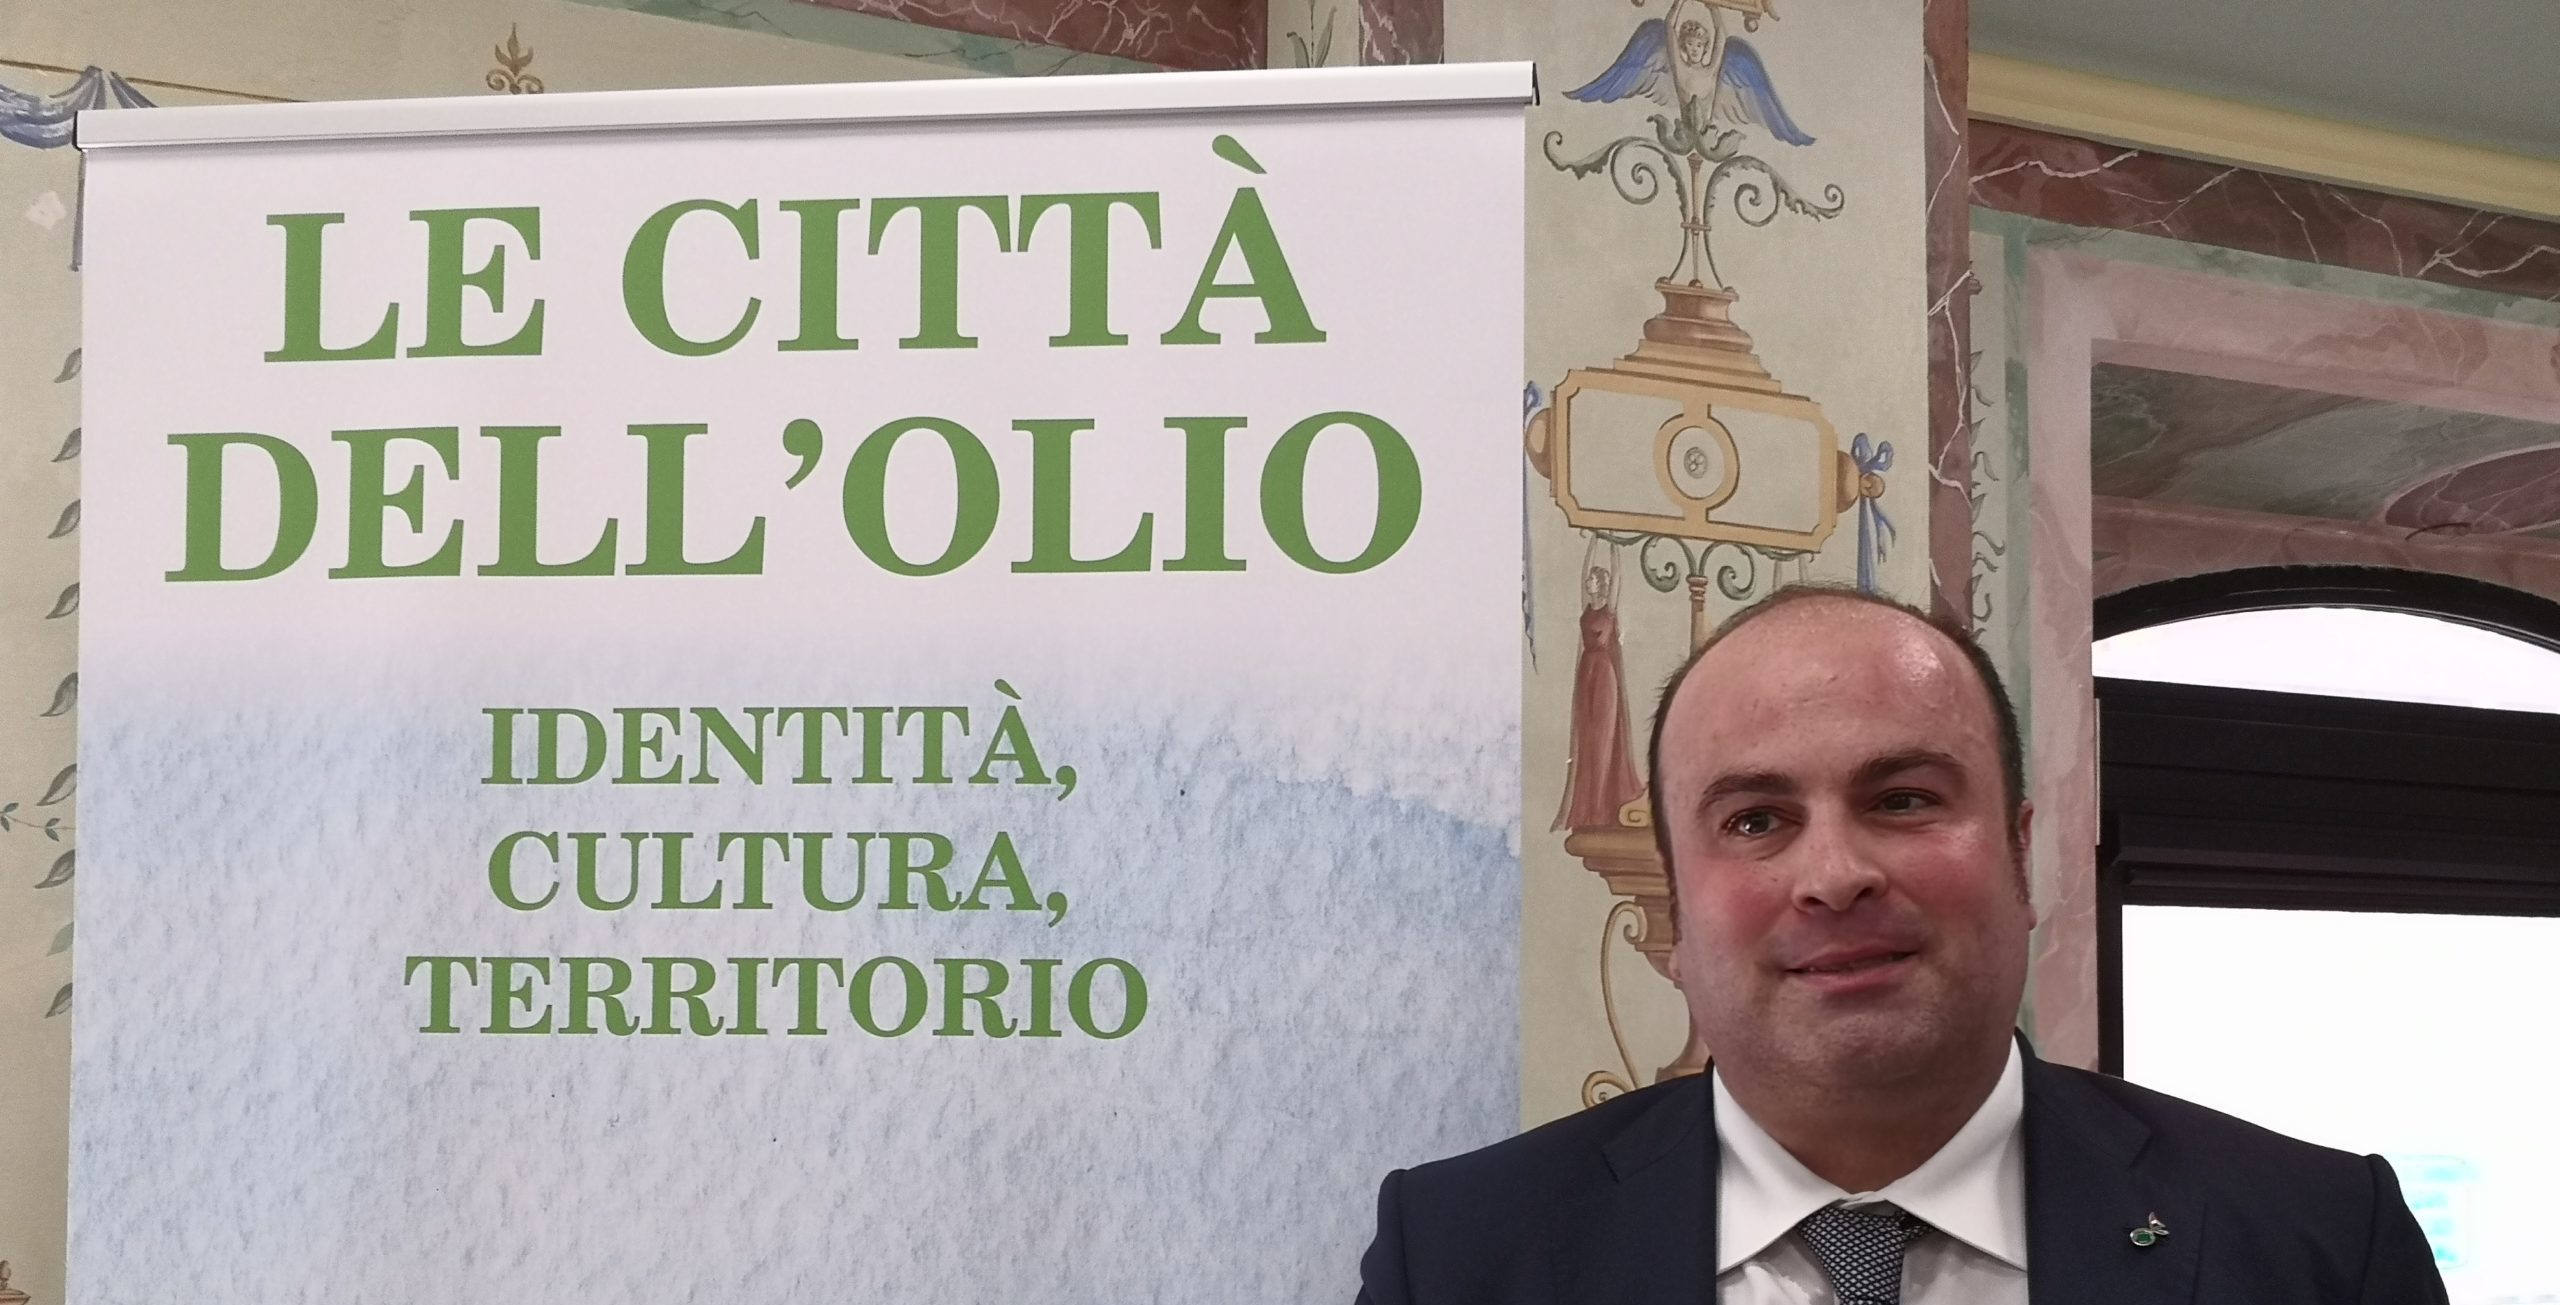 Michele Sonnessa su Nutriscore: “Fermiamo subito questo attacco alla cultura alimentare italiana di cui l’Olio Evo è il simbolo nel mondo”